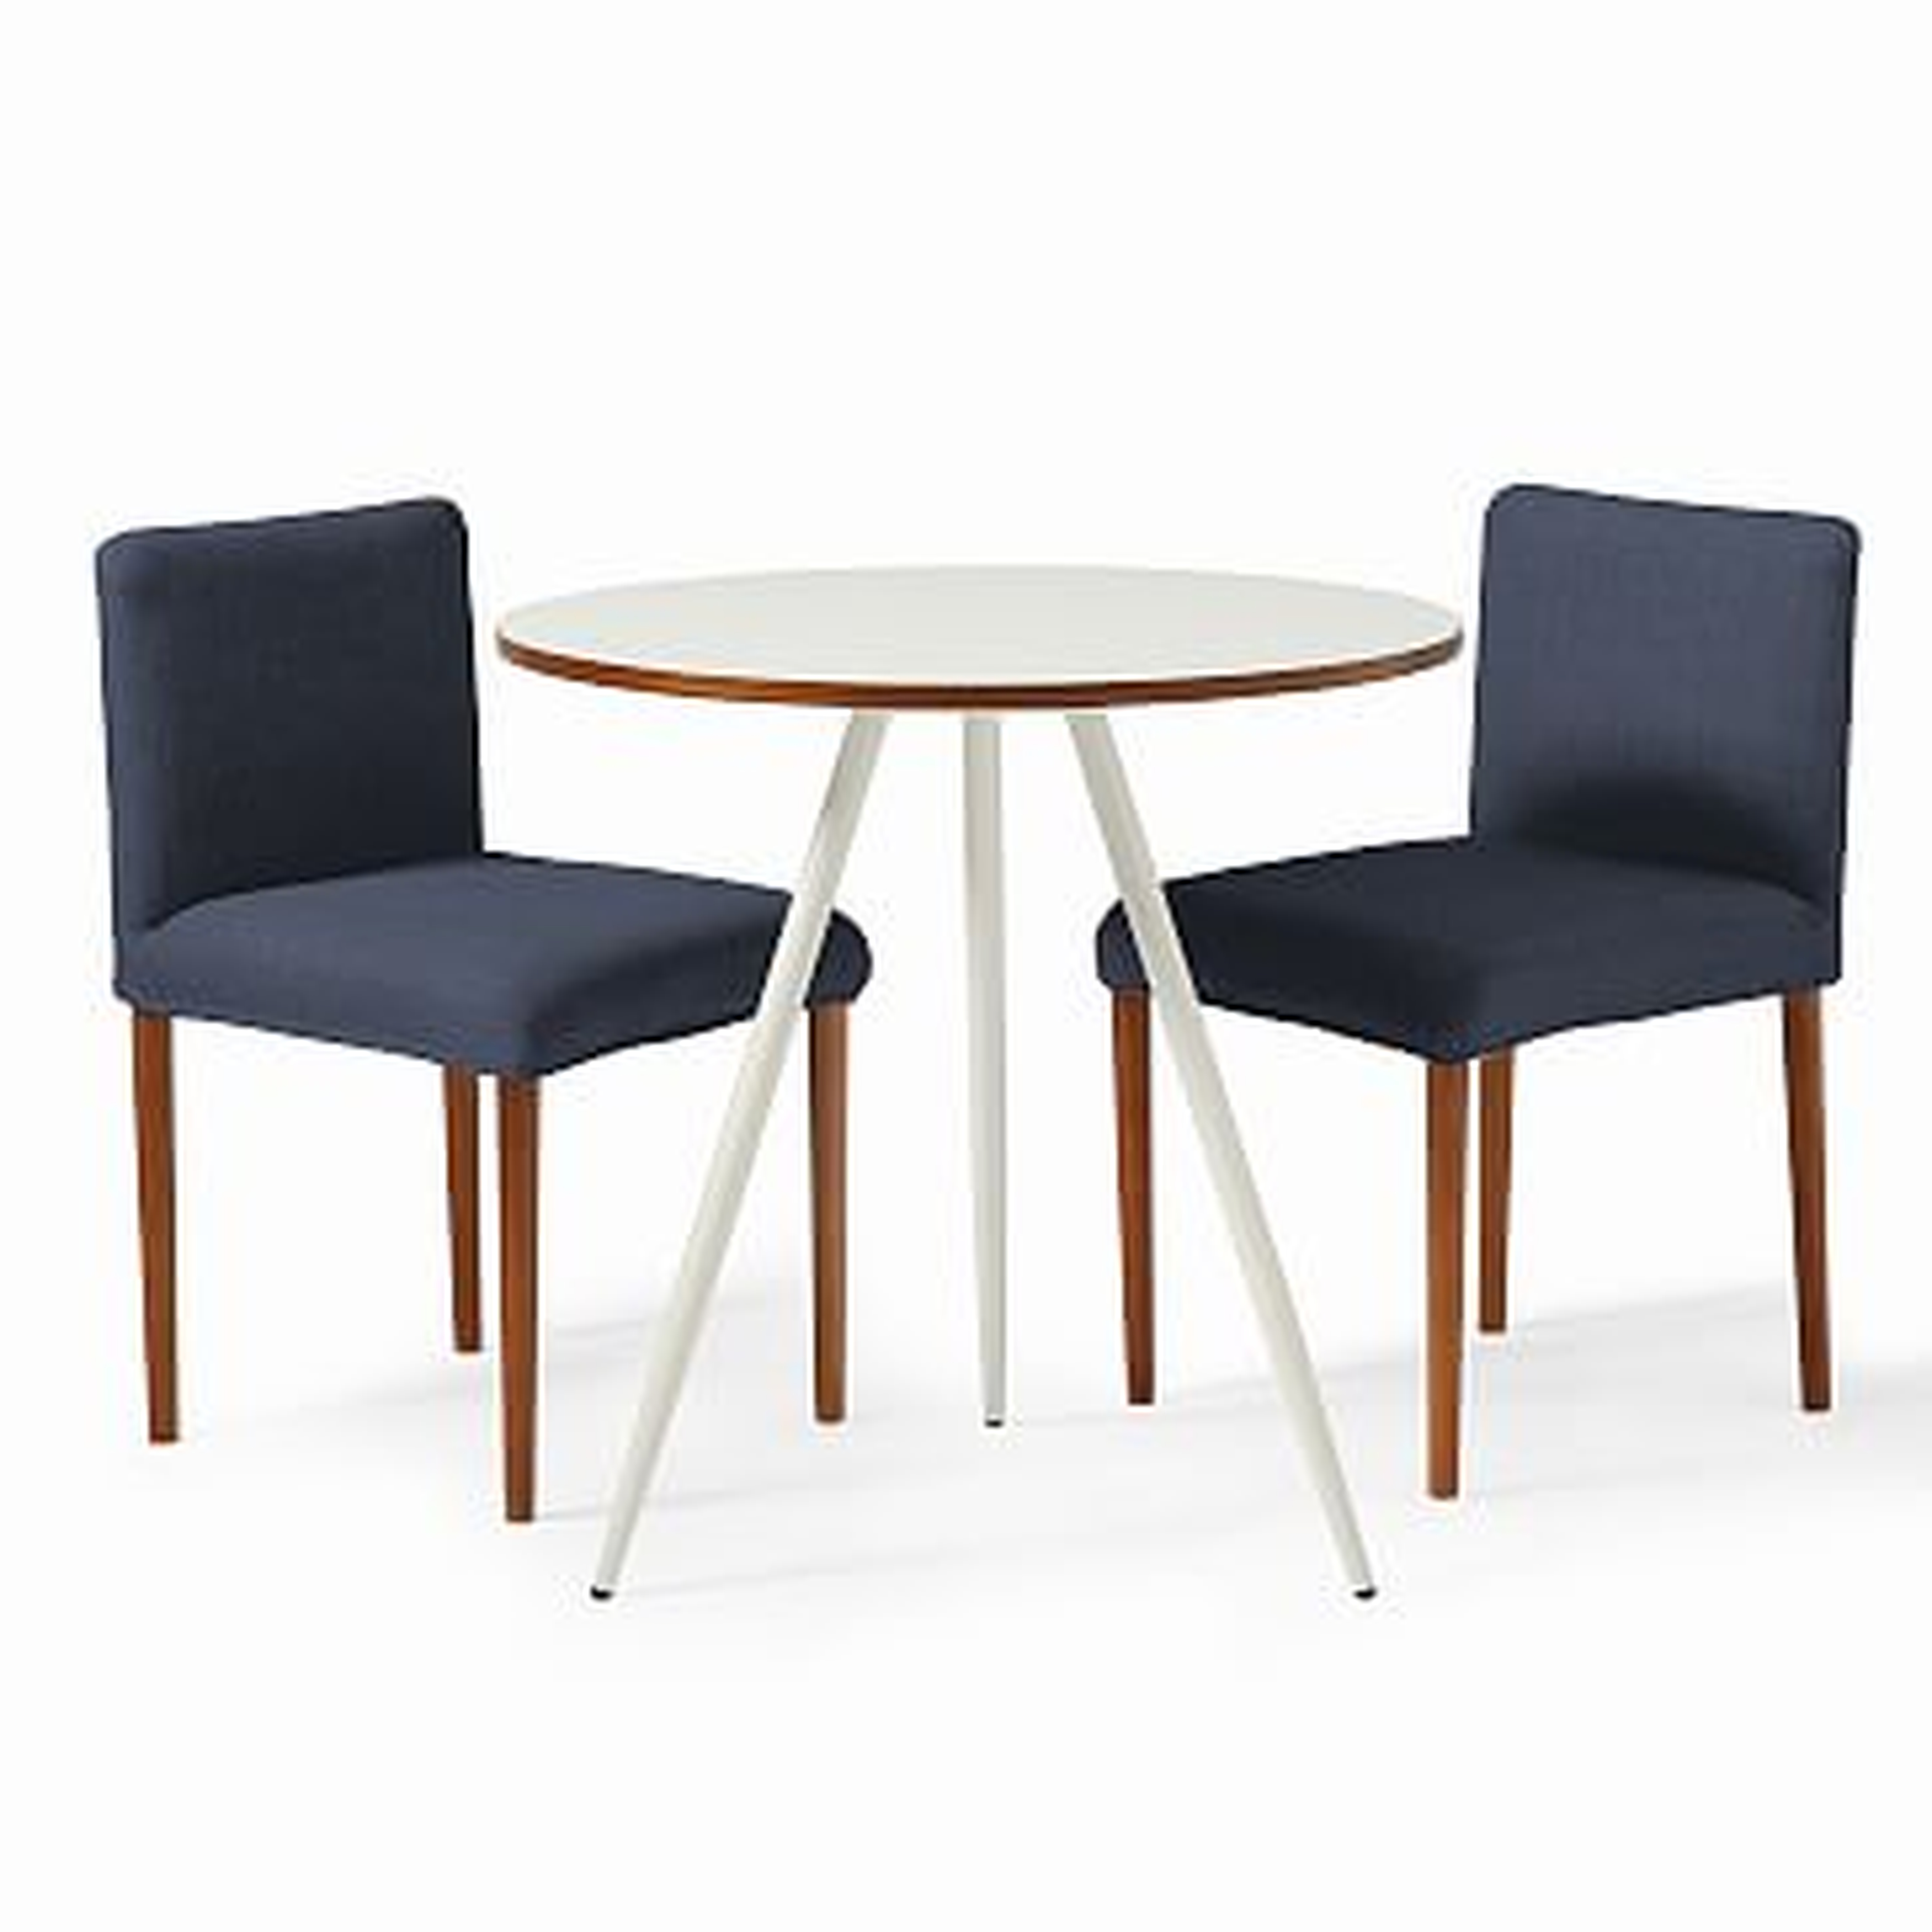 Wren Bistro Table + 2 Ellis Chairs Set, White/Indigo - West Elm